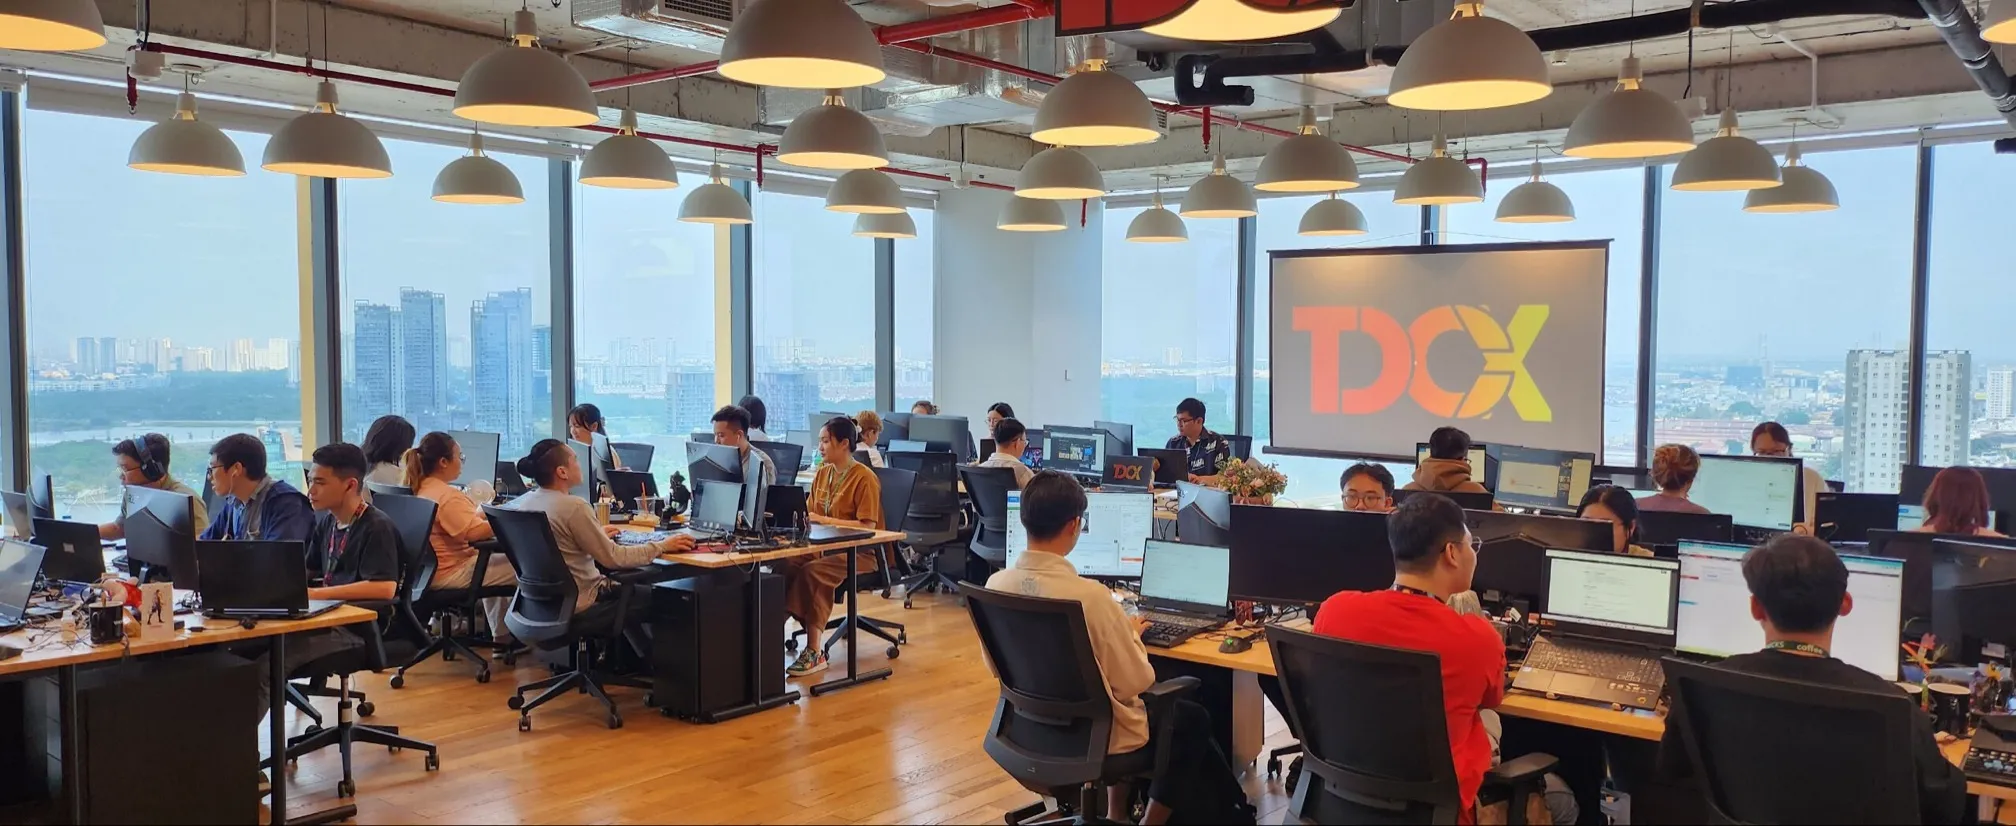 TDCX mở văn phòng tại Việt Nam, mở rộng mạng lưới hỗ trợ khách hàng ngành game